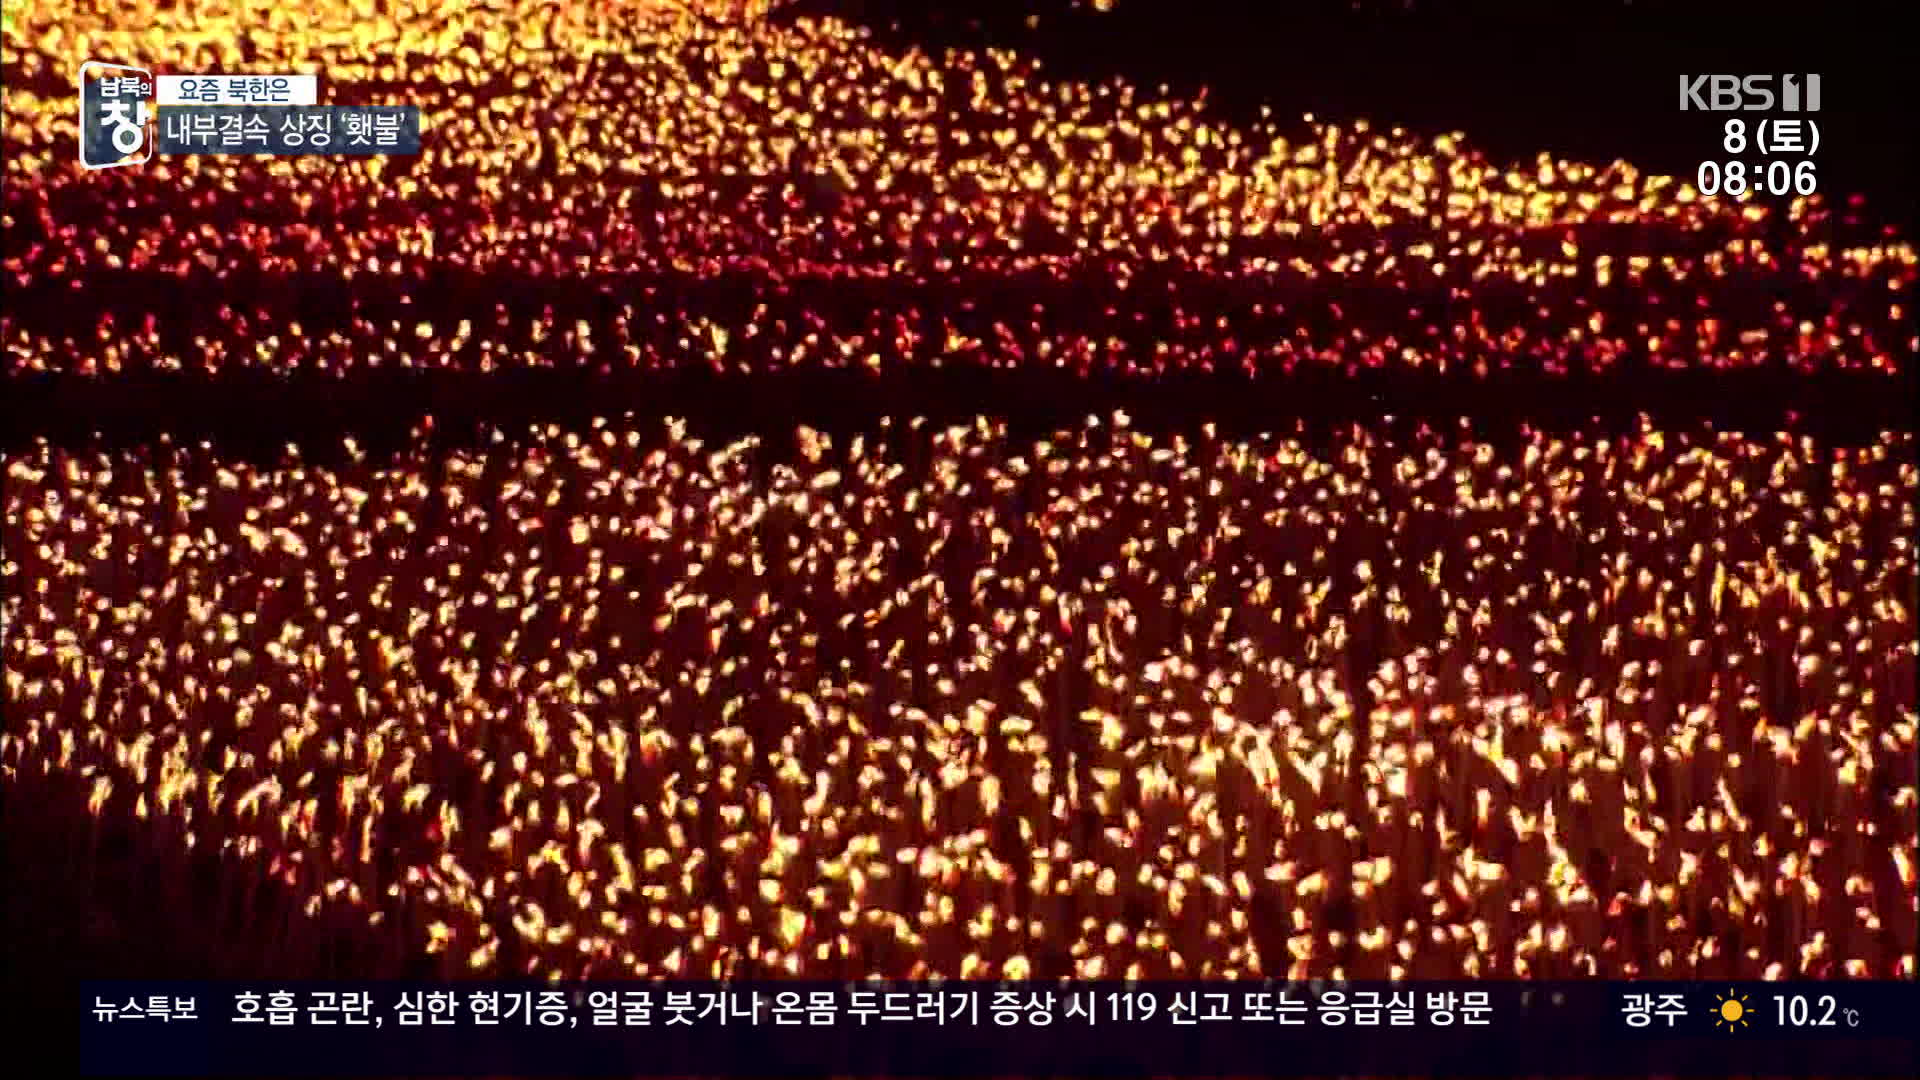 [요즘 북한은] “평양의 밤을 밝히다”…北 횃불 의미는? 외